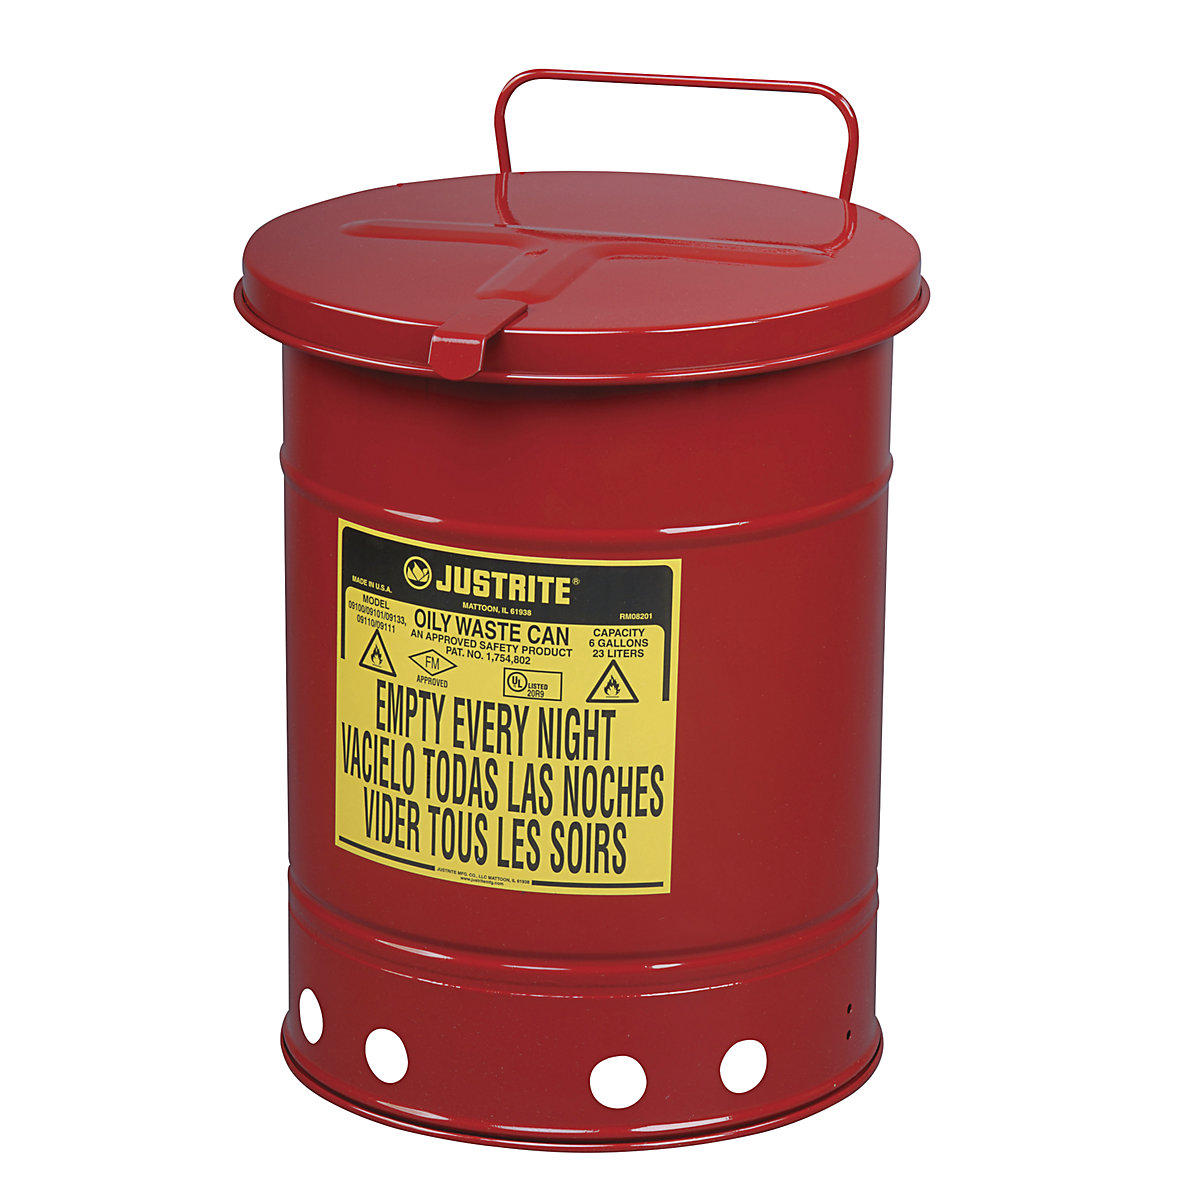 Sicherheits-Entsorgungsbehälter aus Stahlblech Justrite, rund, mit Handbedienung, Volumen 80 l-4